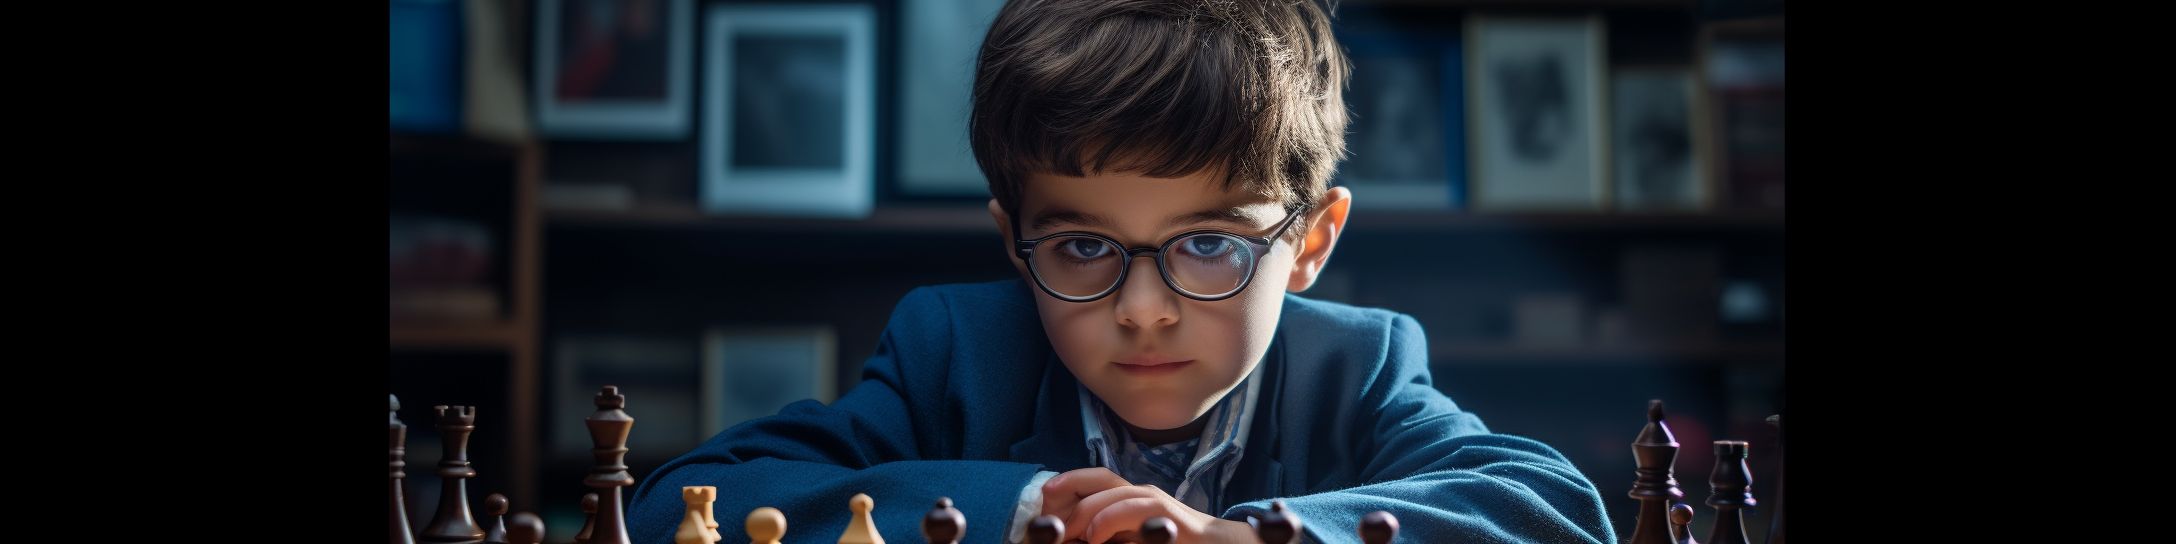 Maxime Vachier-Lagrave : ses premiers pas dans le monde des échecs